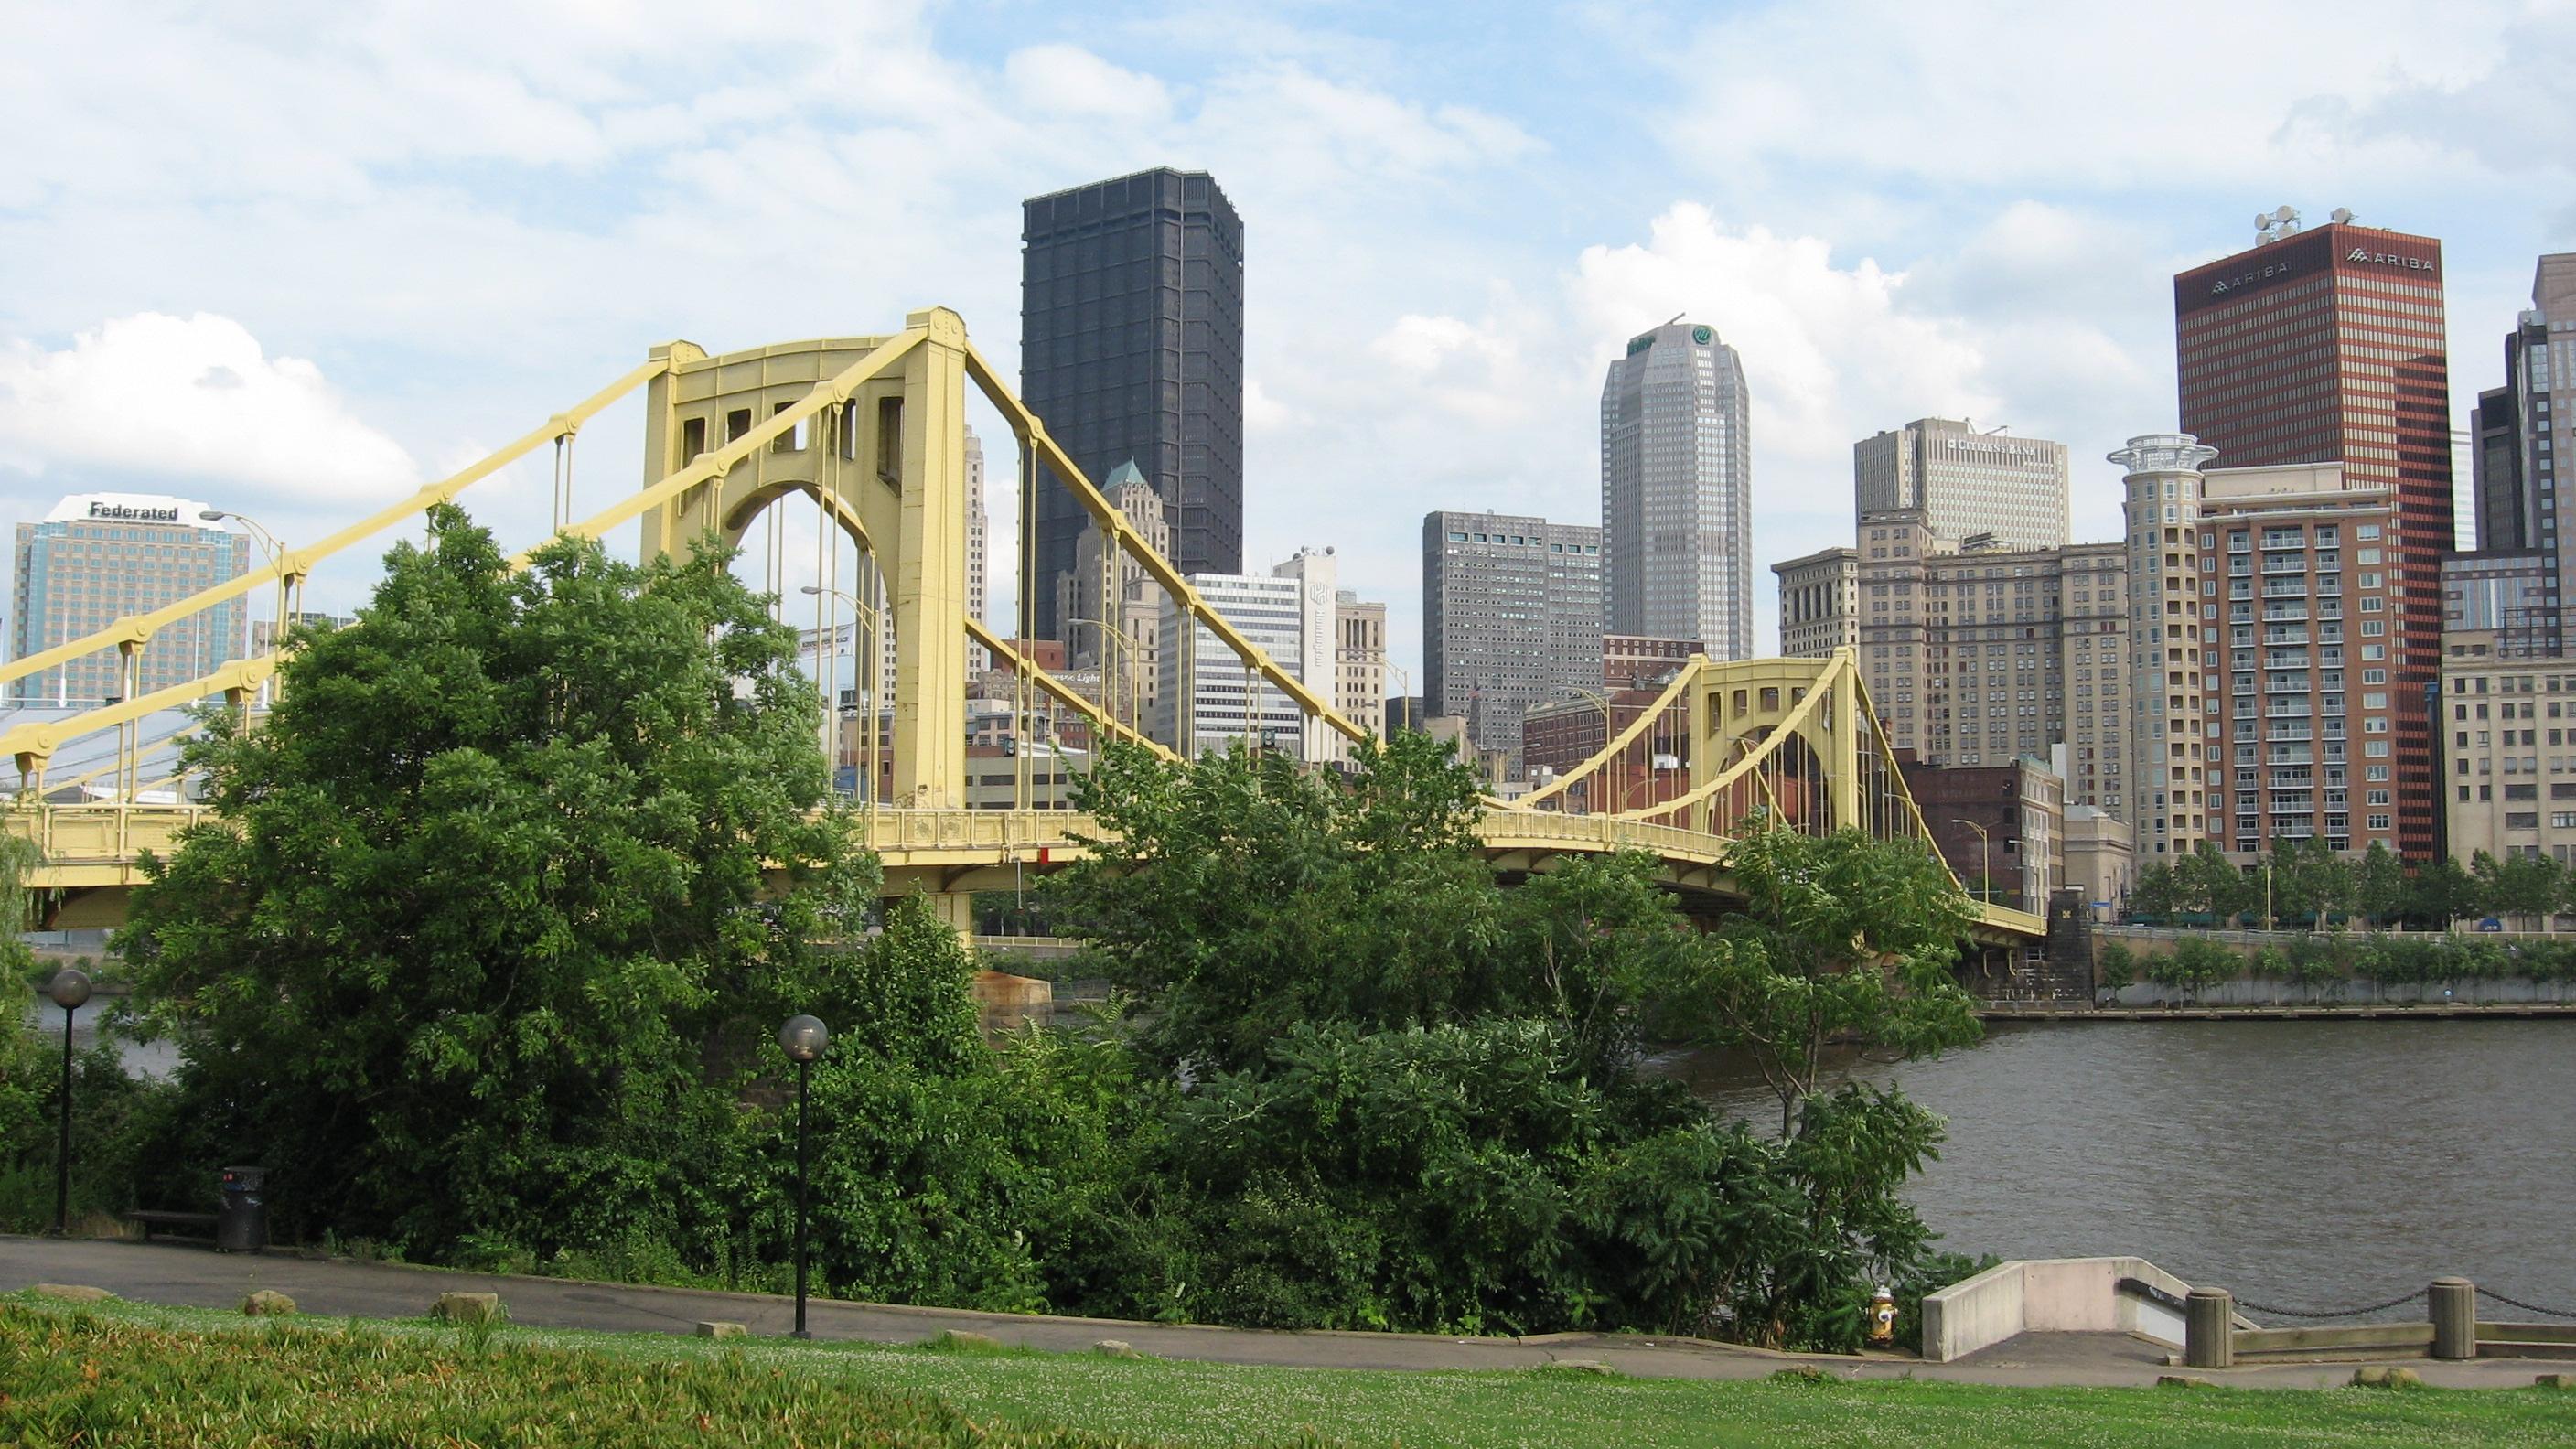 Andy Warhol Bridge in Pittsburgh